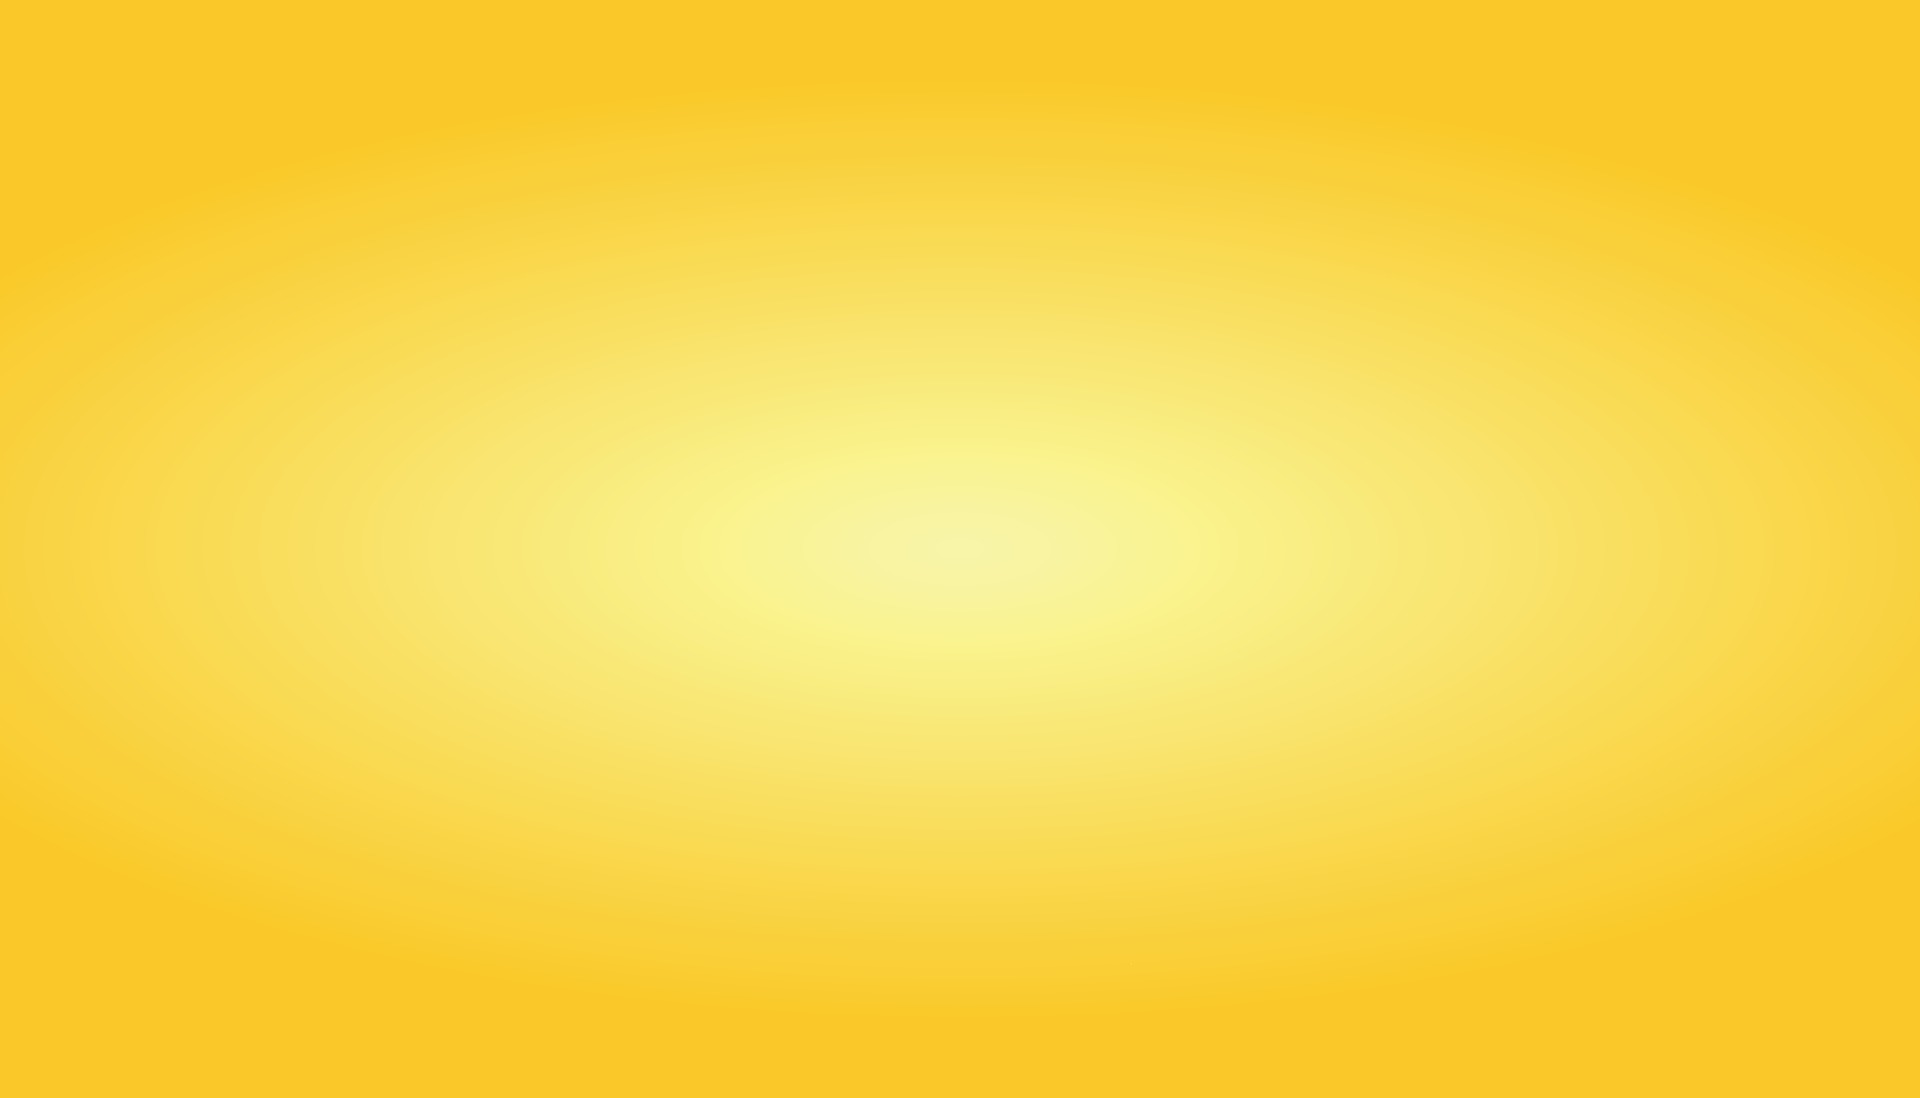 Vector nền màu vàng gradient là một lựa chọn tuyệt vời để thể hiện sự chuyên nghiệp và sáng tạo của bạn. Freepik cung cấp những biểu tượng và đồ họa miễn phí để bạn có thể sử dụng trong thiết kế của mình. Hãy truy cập ngay để khám phá những điều tuyệt vời mà Freepik có thể cung cấp cho bạn!